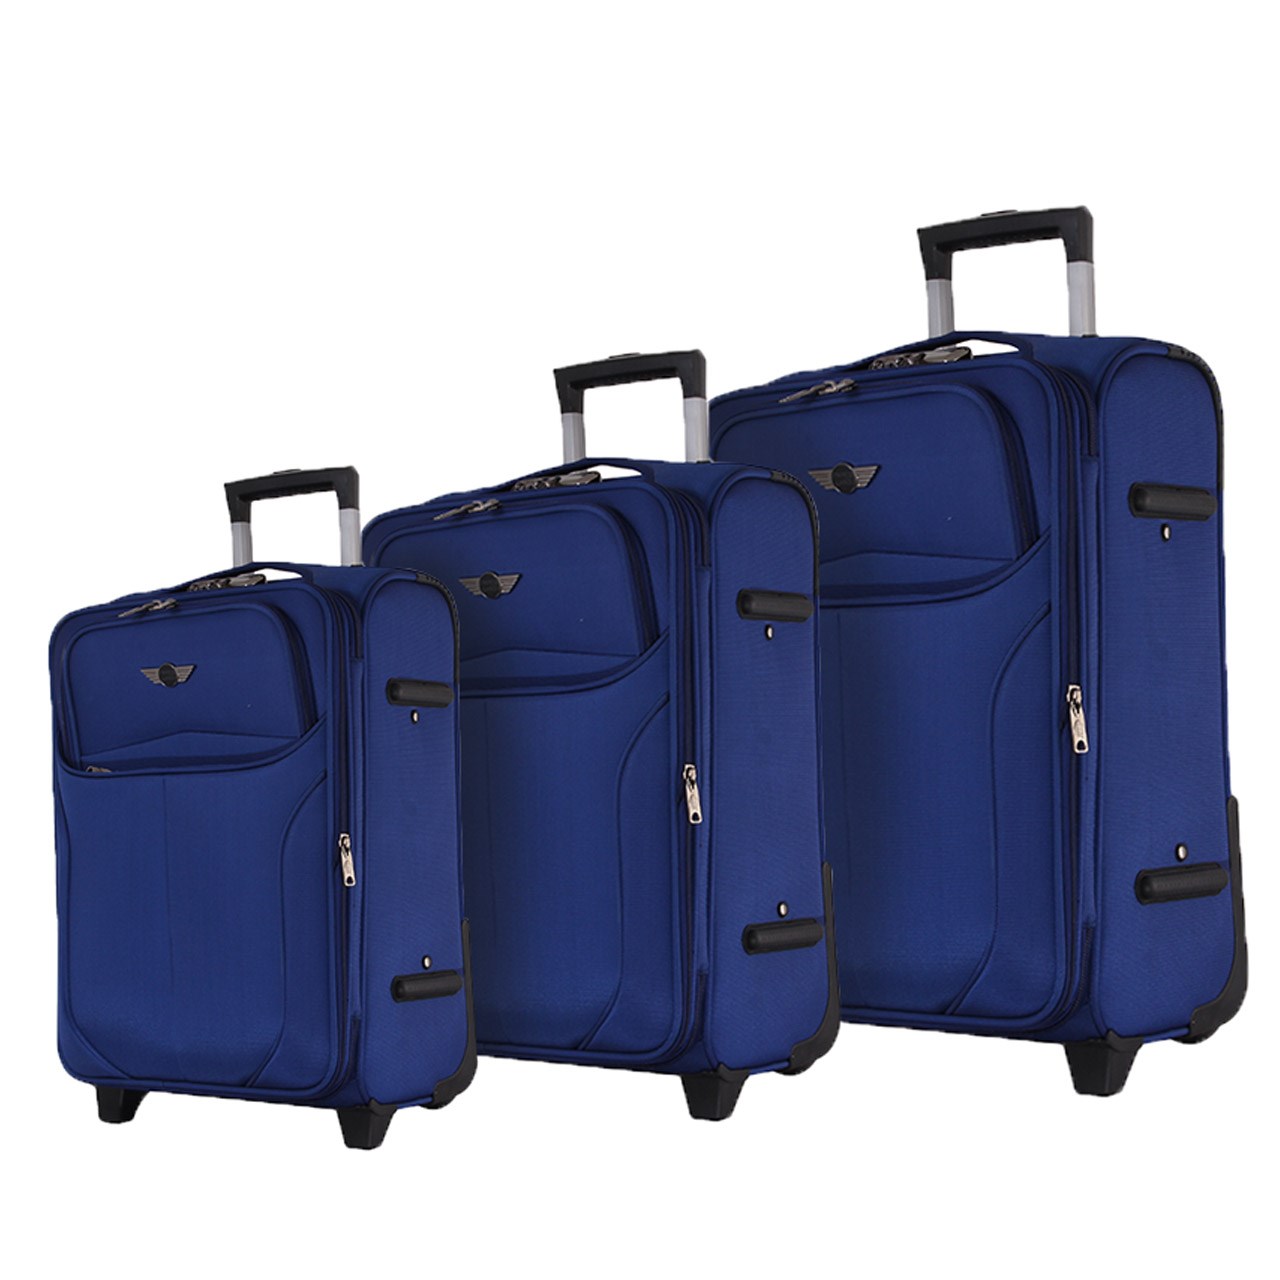 مجموعه سه عددی چمدان تیپس لند مدل 18-2-1663